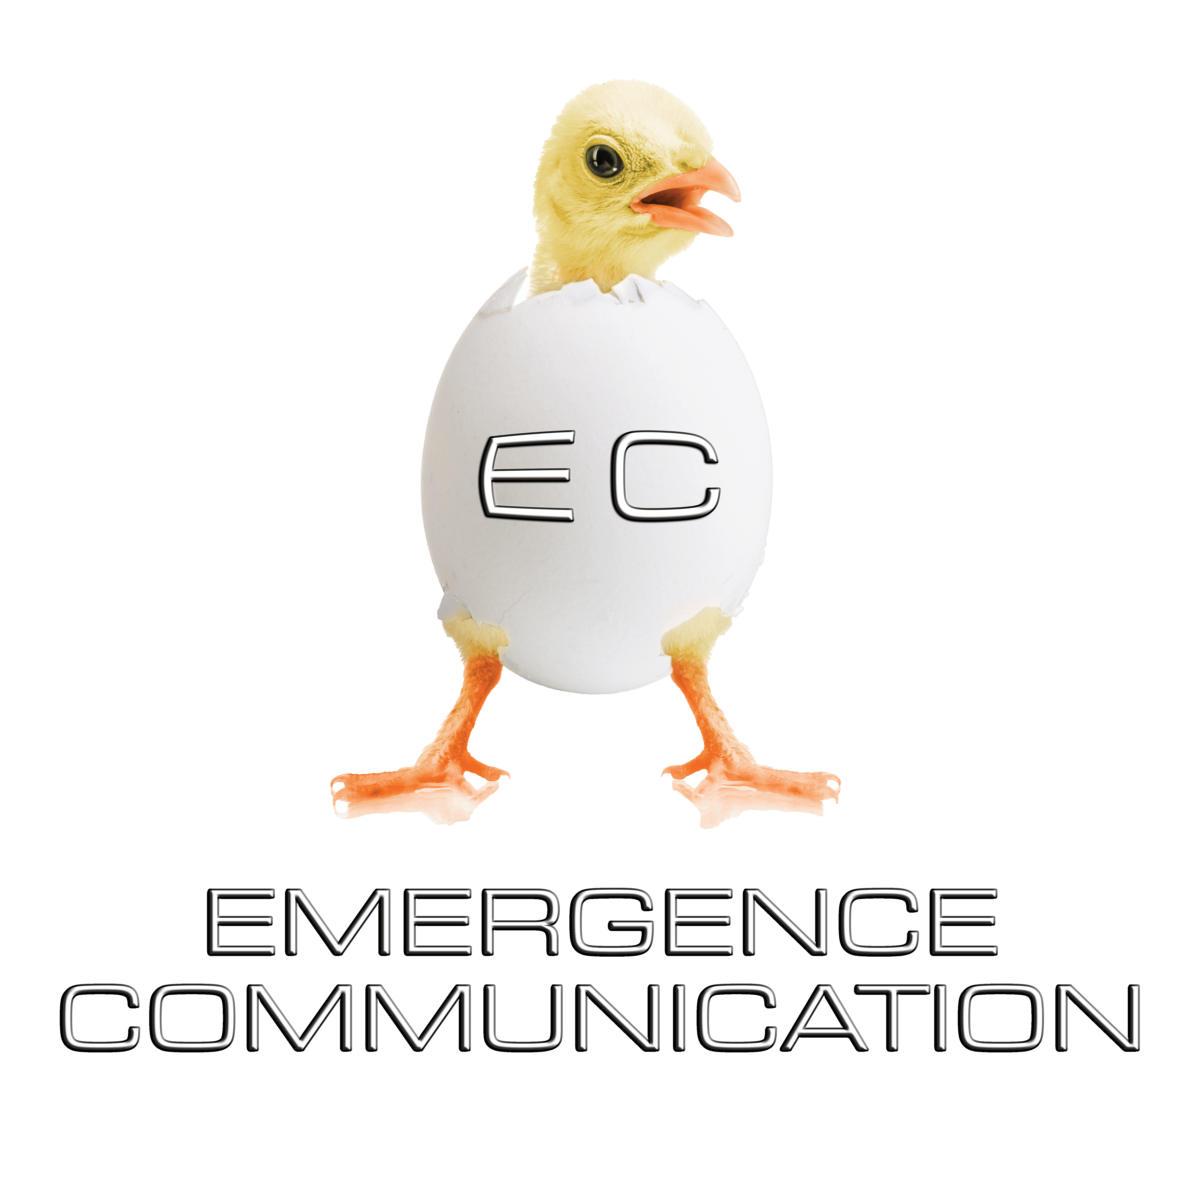 logo d'Emergence Communication avec un poussin qui émerge de sa coquille